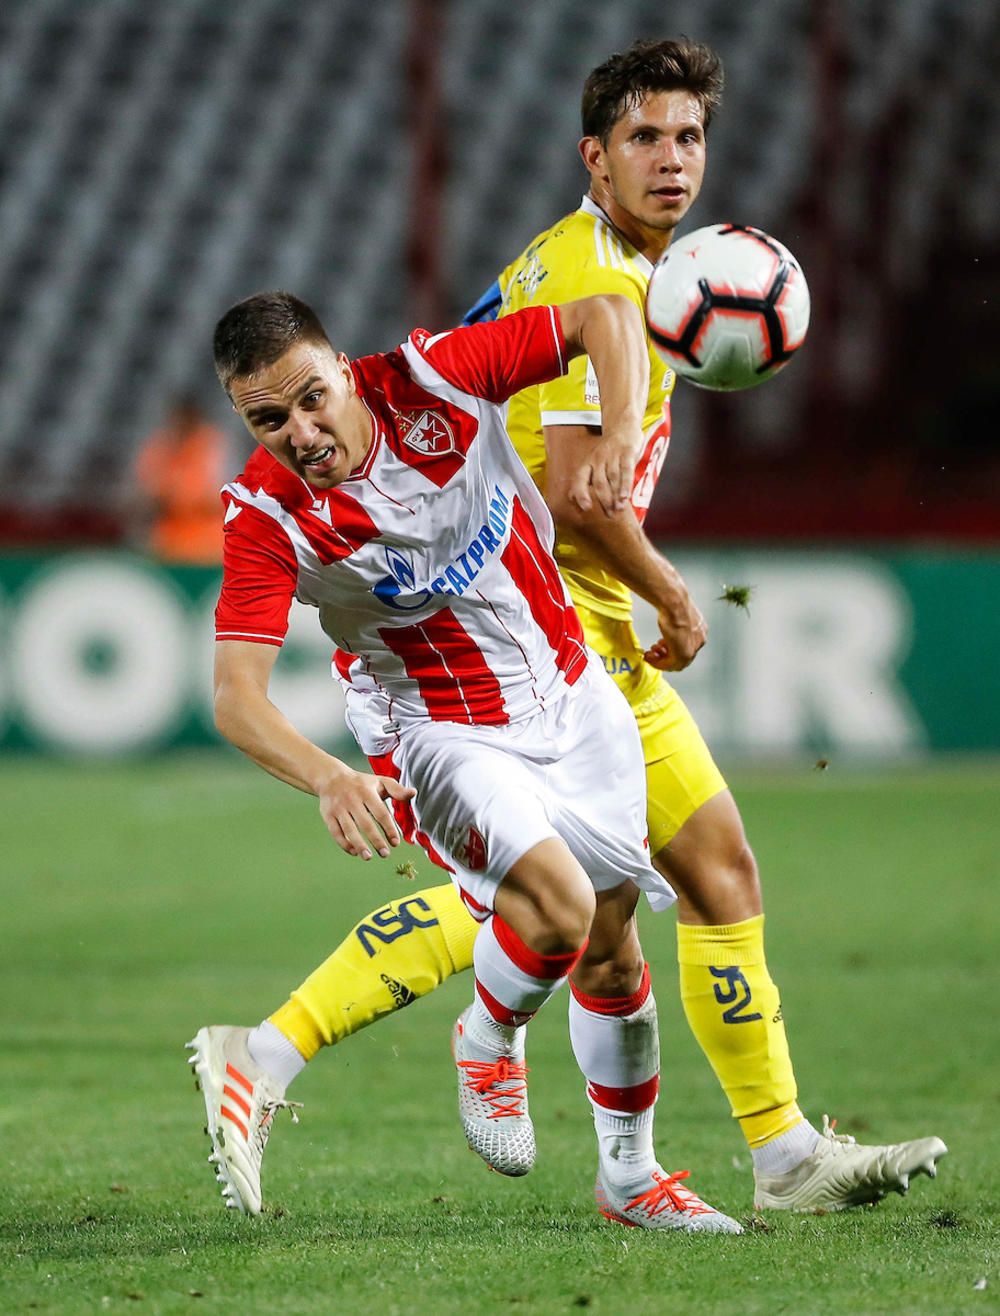 Sumnja se da je Branko Jovičić zaradio povredu prednjeg ukrštenog ligamenta